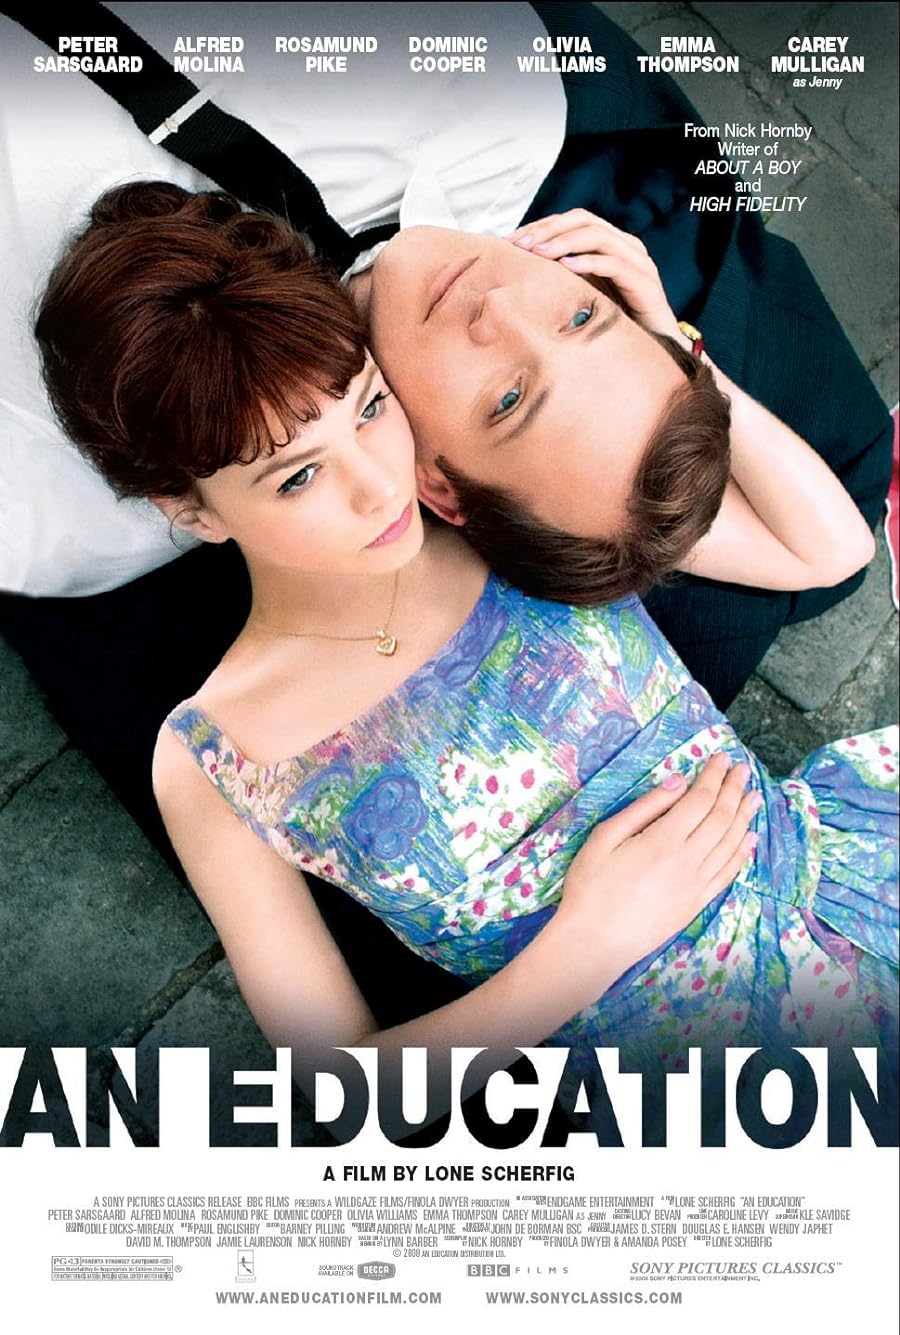 دانلود فیلم An Education 2009